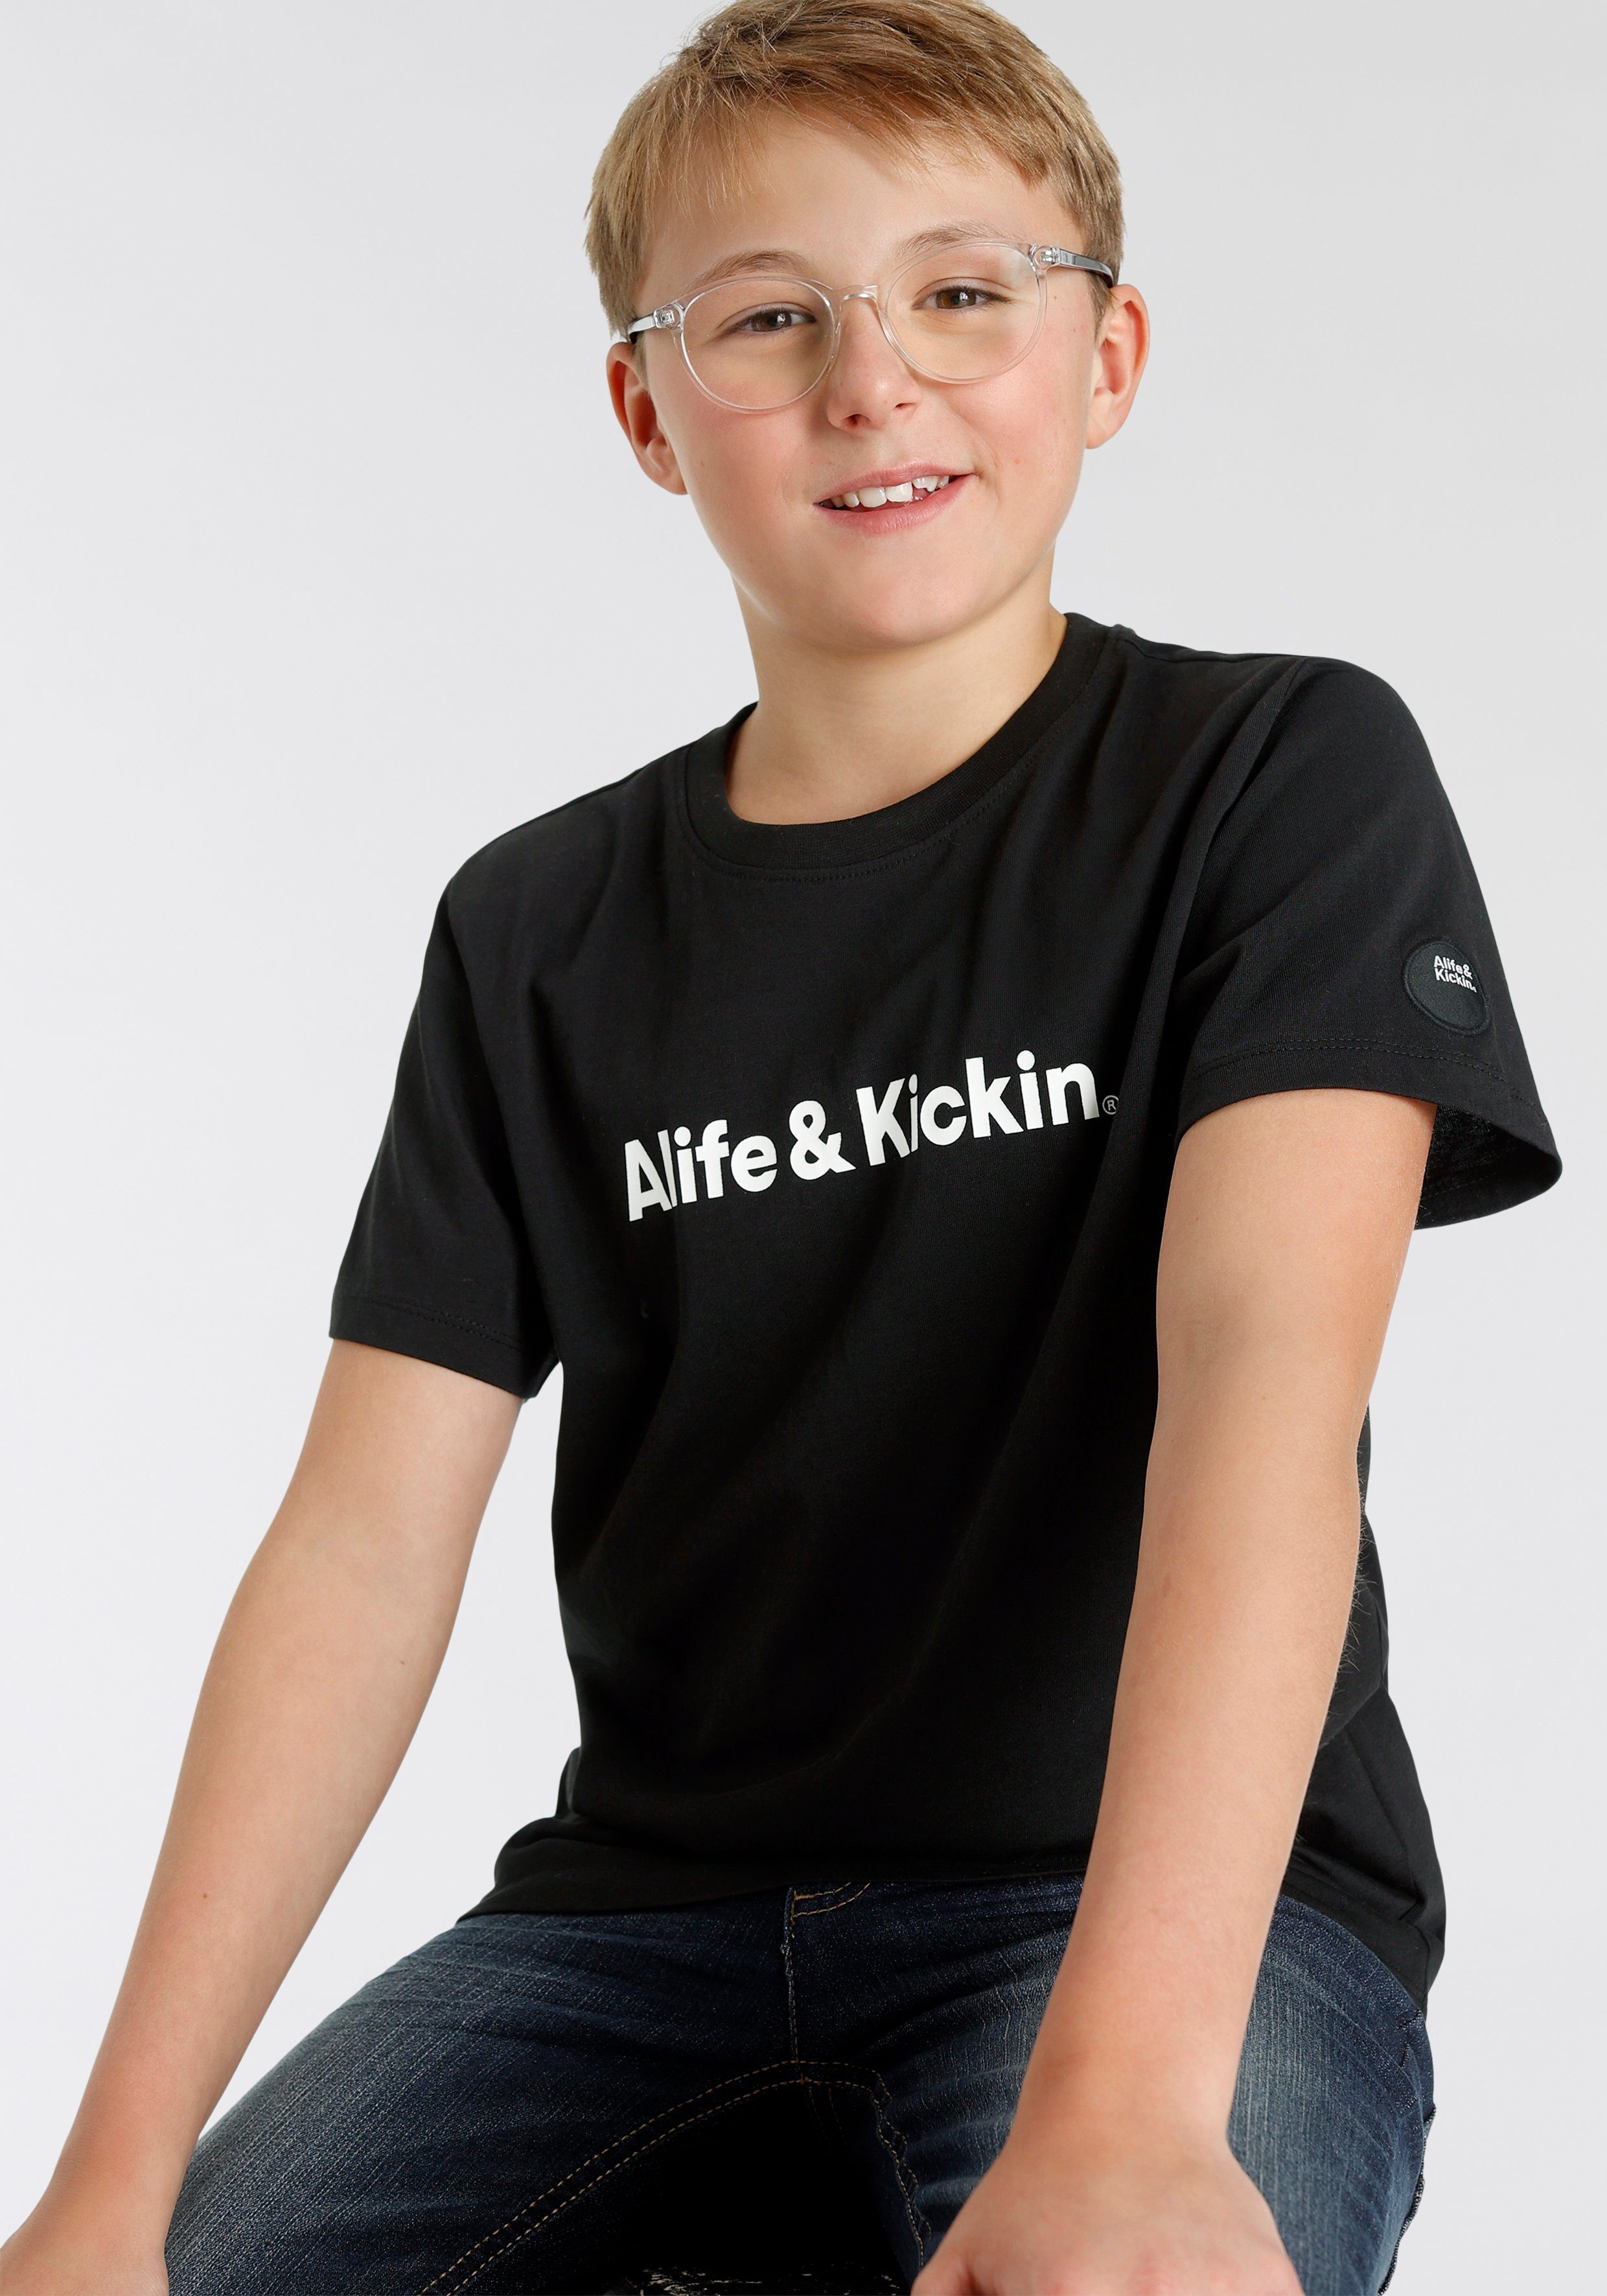 Alife & T-Shirt Kids. für Kickin Alife&Kickin NEUE MARKE! Logo-Print